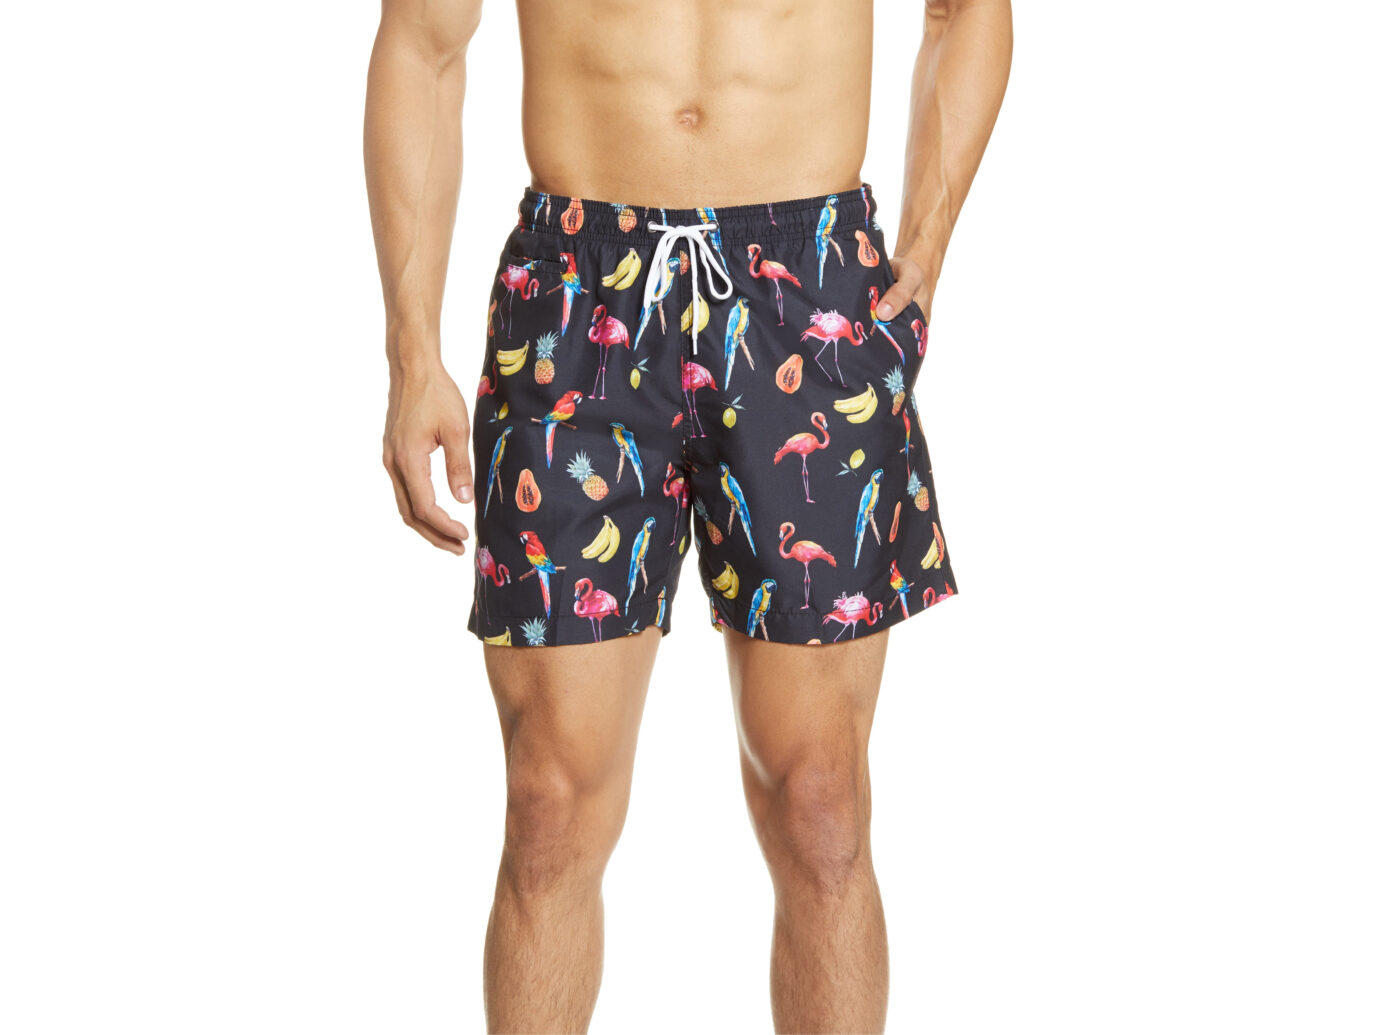 New 2020 Beach shorts men swim shorts board swimwear summer shorts swimsuit 